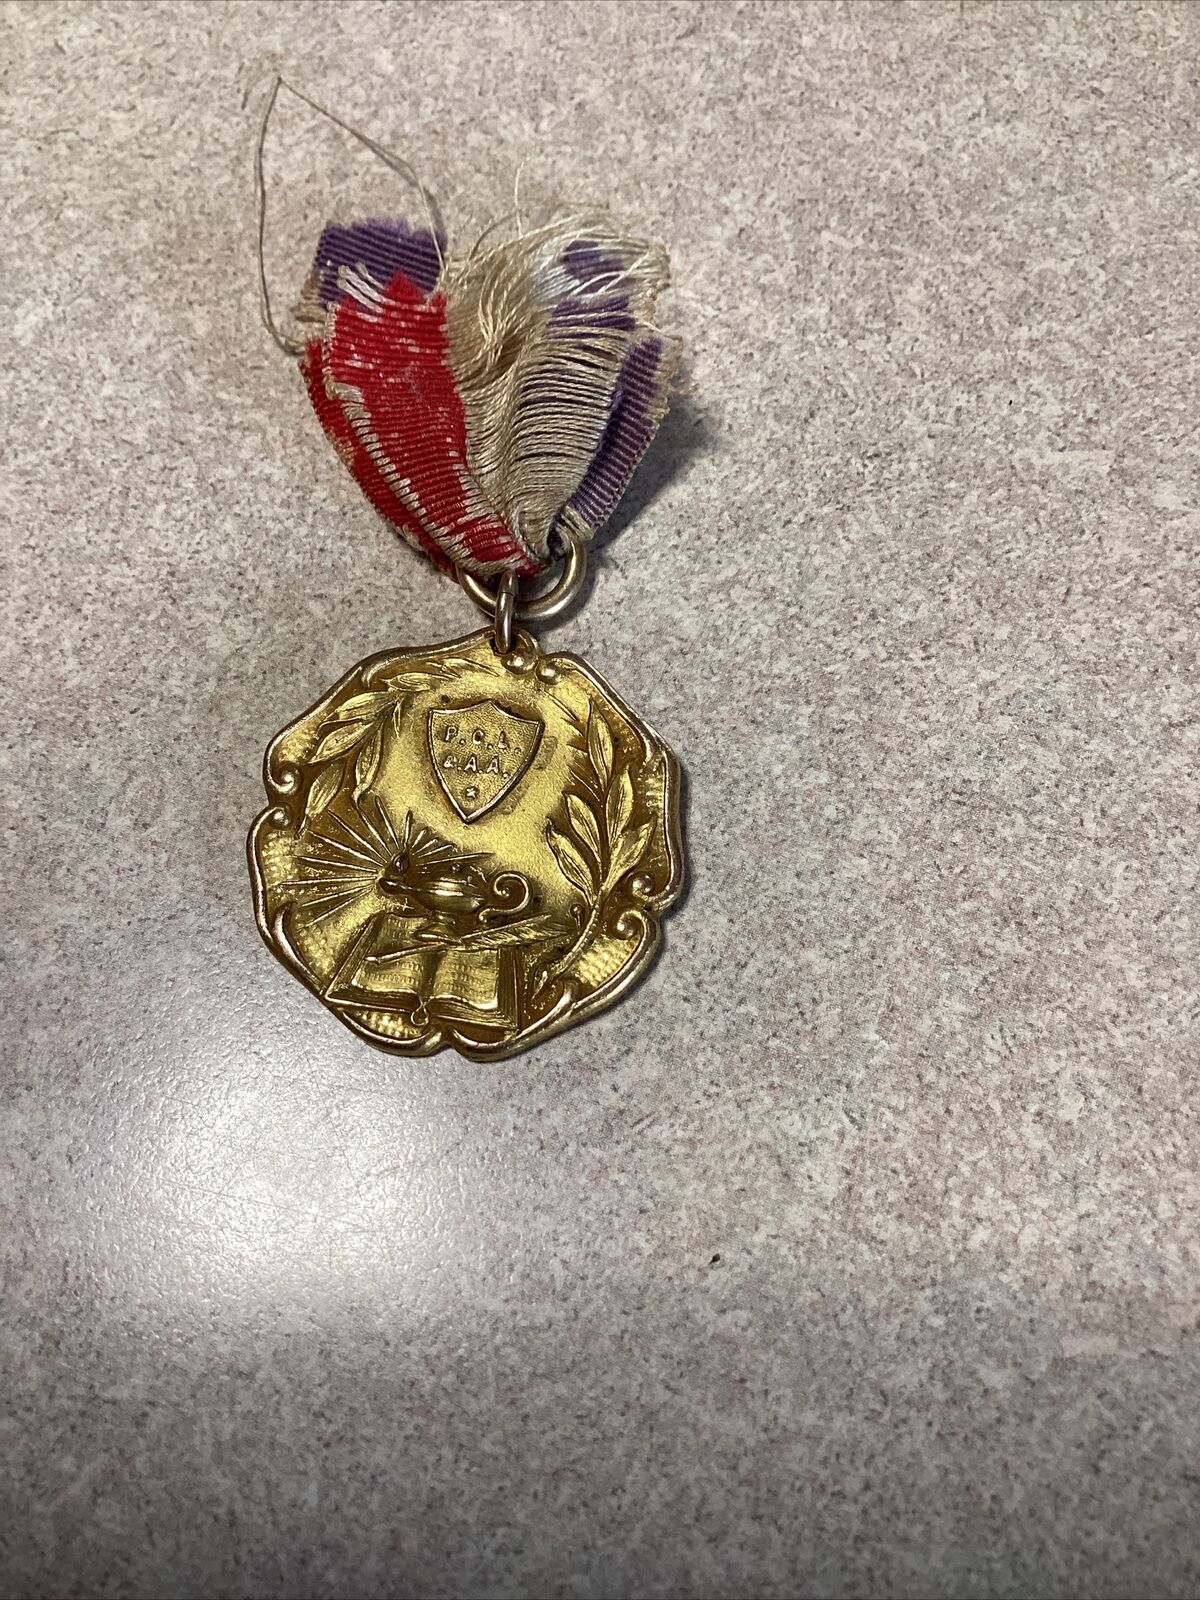 Antique Gold Filled 1st Prize Medal 1922